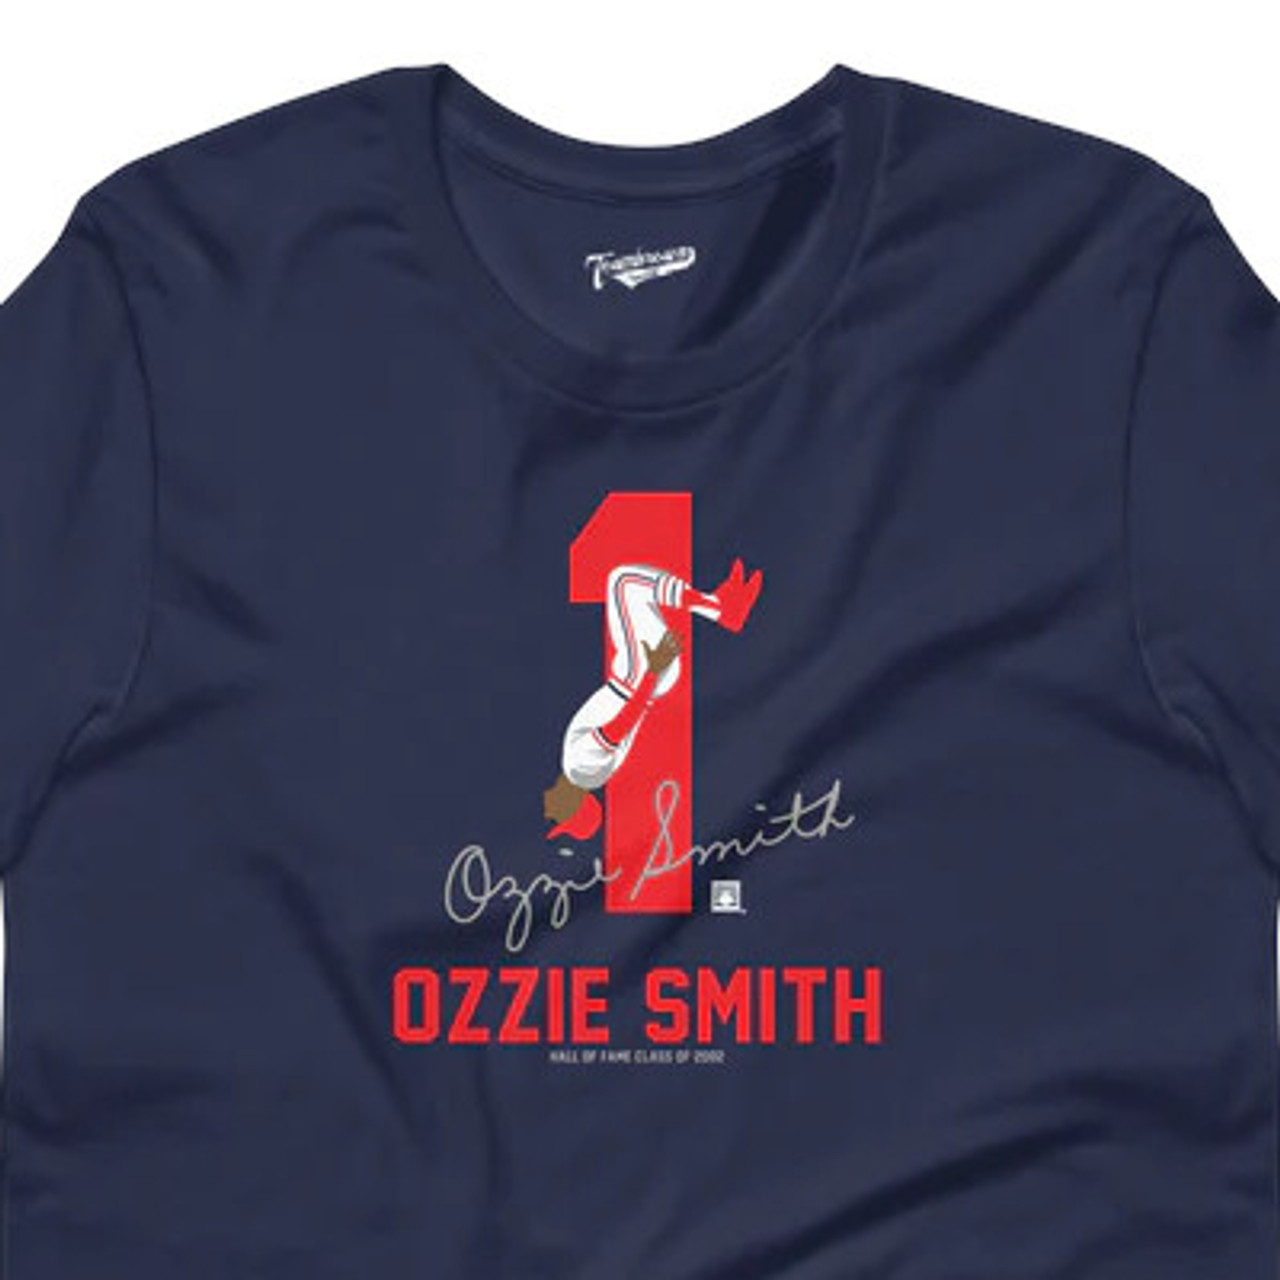 Ozzie Smith Jersey, Ozzie Smith Gear and Apparel